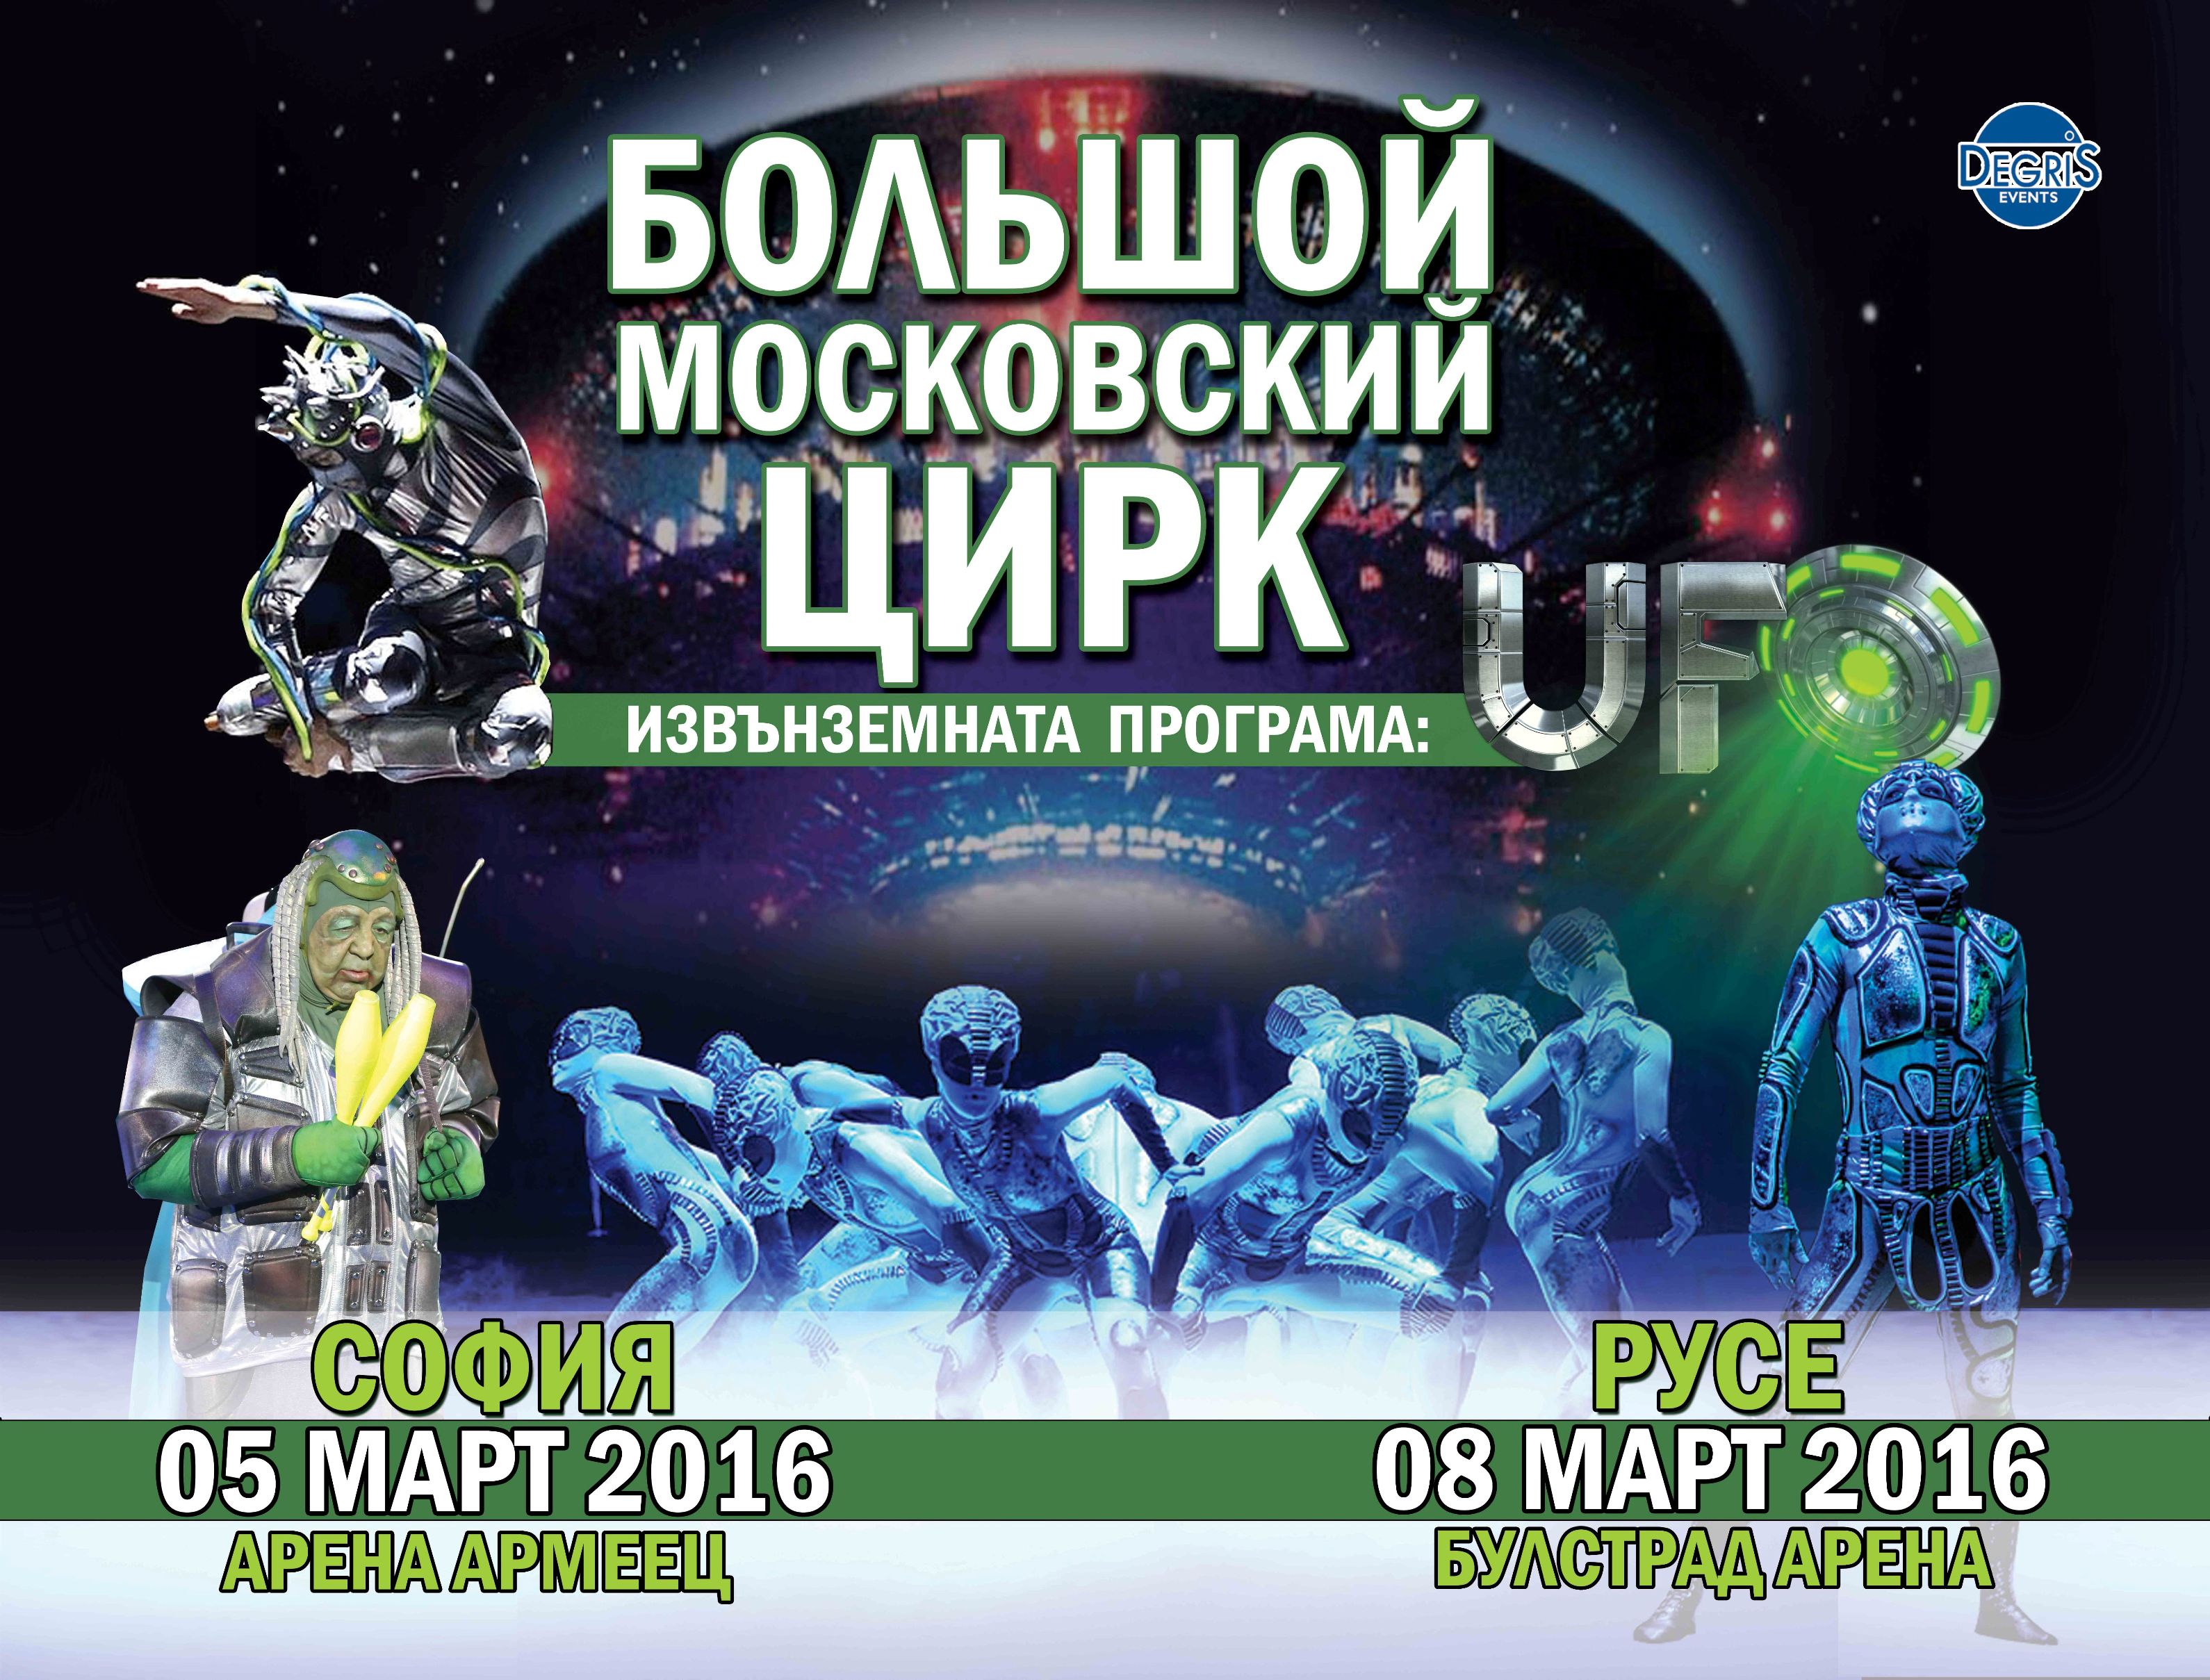 ”Большой московский цирк” с извънземно шоу ”UFO” в България